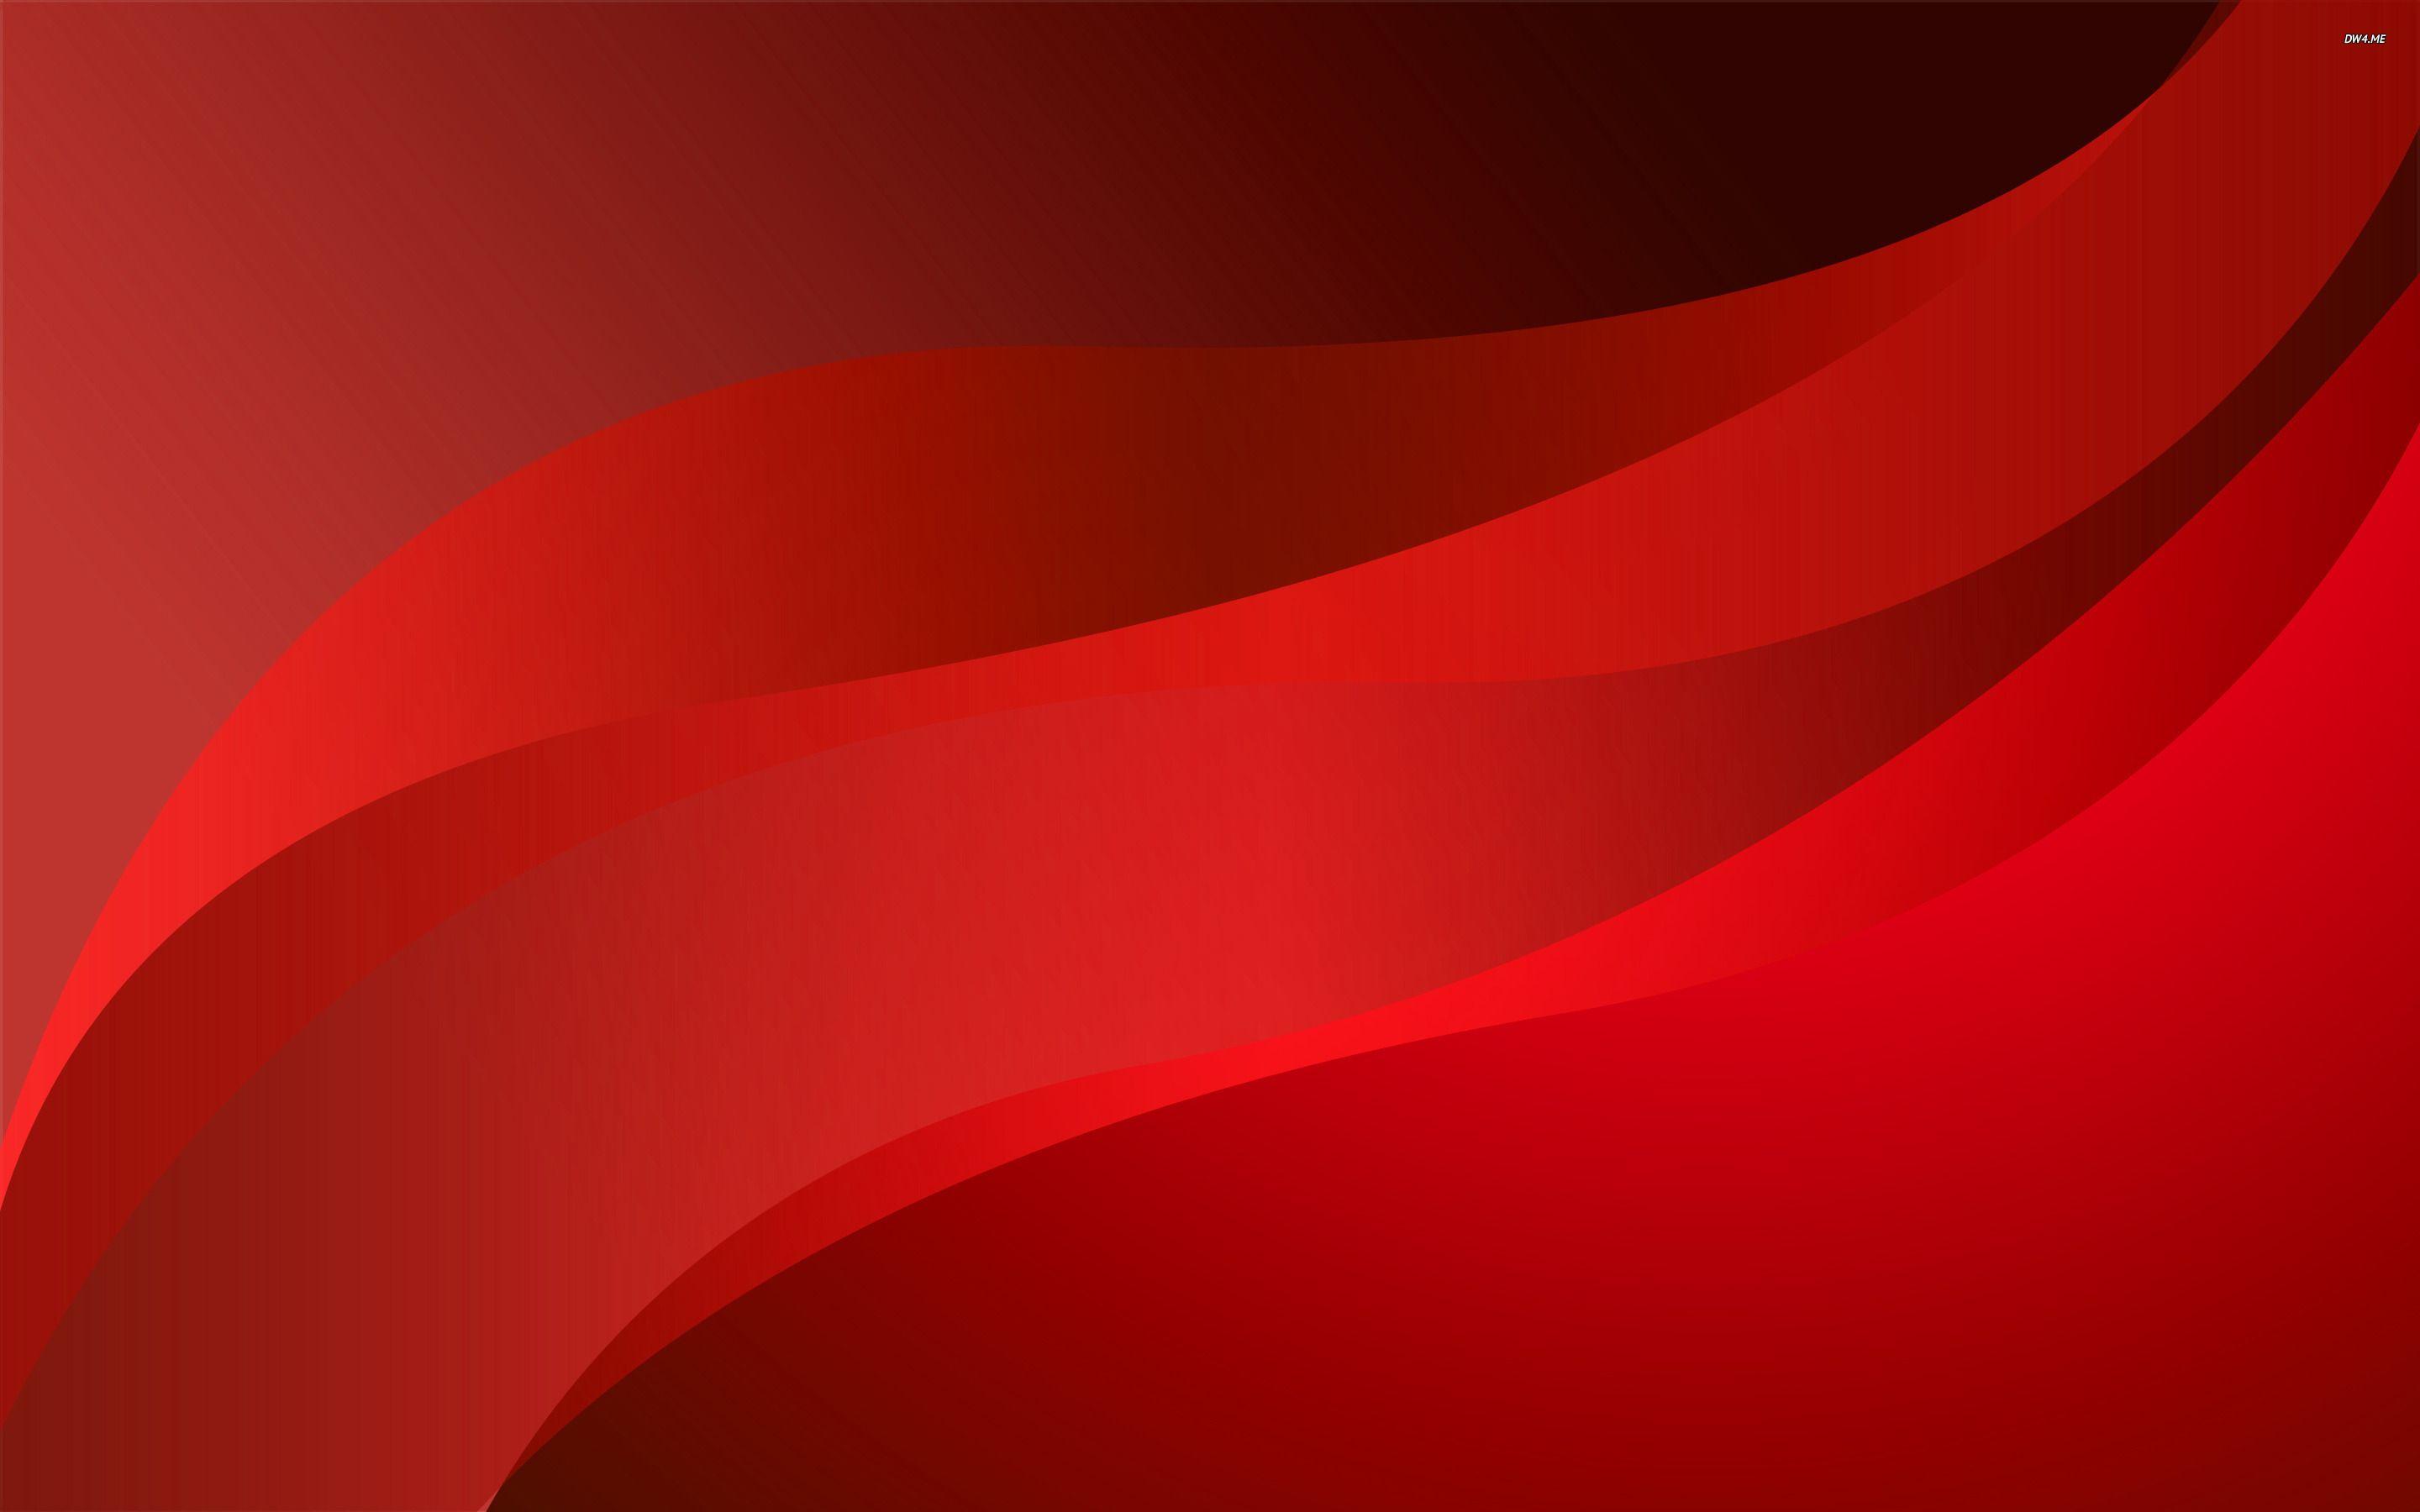 Hình nền đỏ trừu tượng: Đỏ - màu sắc của đam mê, nhiệt huyết và sự quyến rũ. Hãy để hình nền đỏ trừu tượng này gợi lên trong bạn những cảm xúc đó. Sự kết hợp tinh tế giữa những hình khối trừu tượng và sắc đỏ đậm sẽ khiến bạn ấn tượng ngay từ cái nhìn đầu tiên.